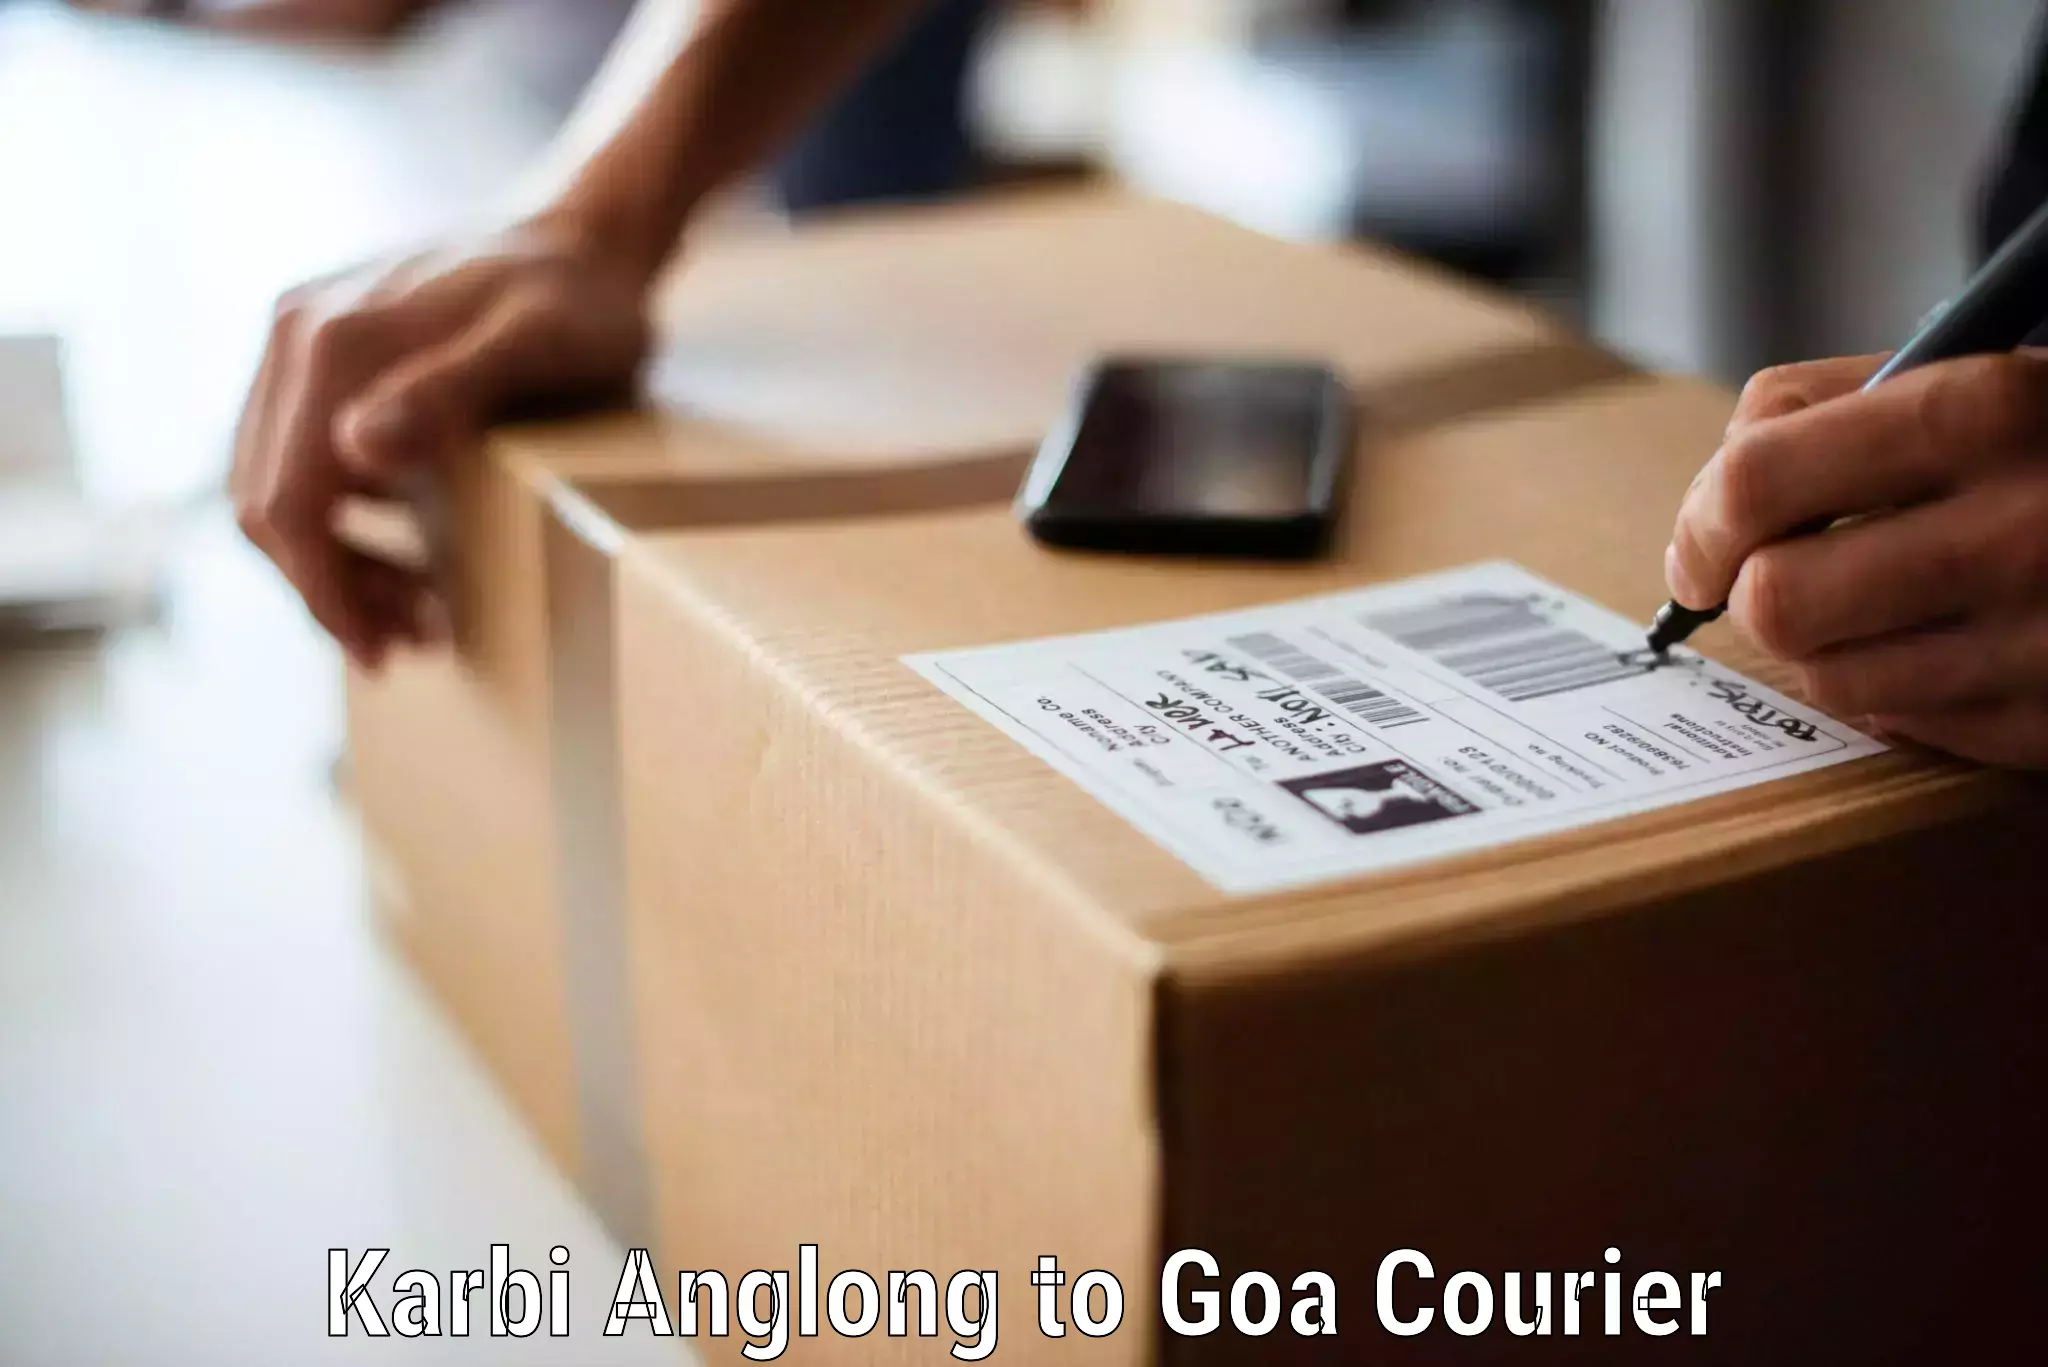 Safe household movers Karbi Anglong to Goa